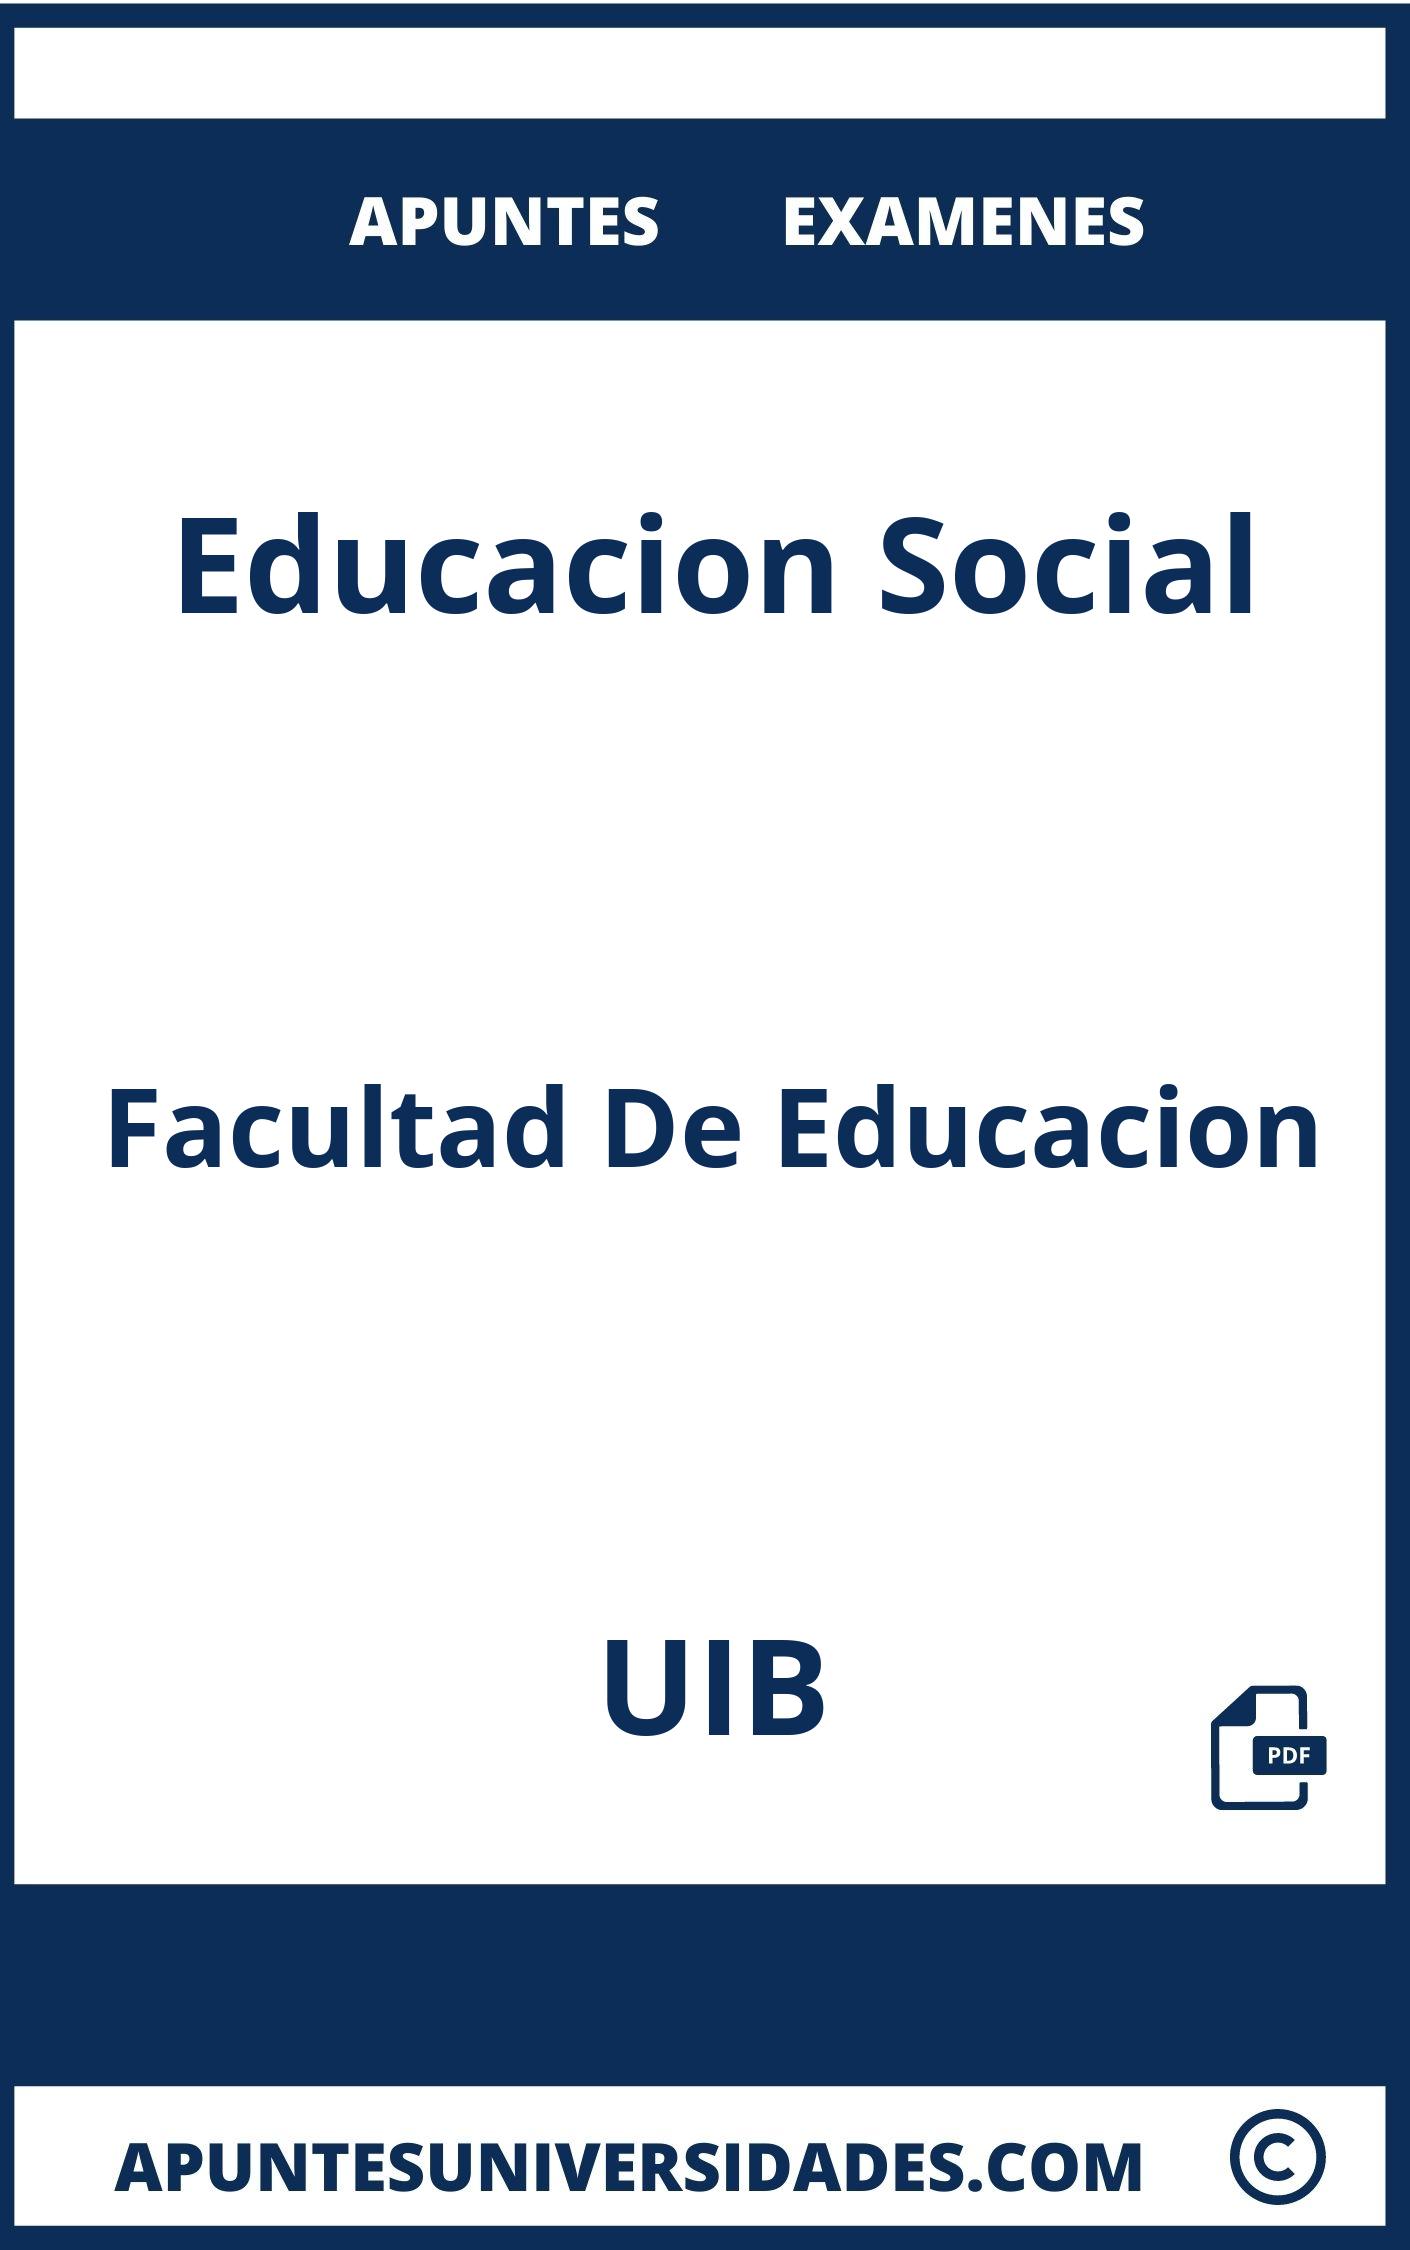 Examenes y Apuntes de Educacion Social UIB